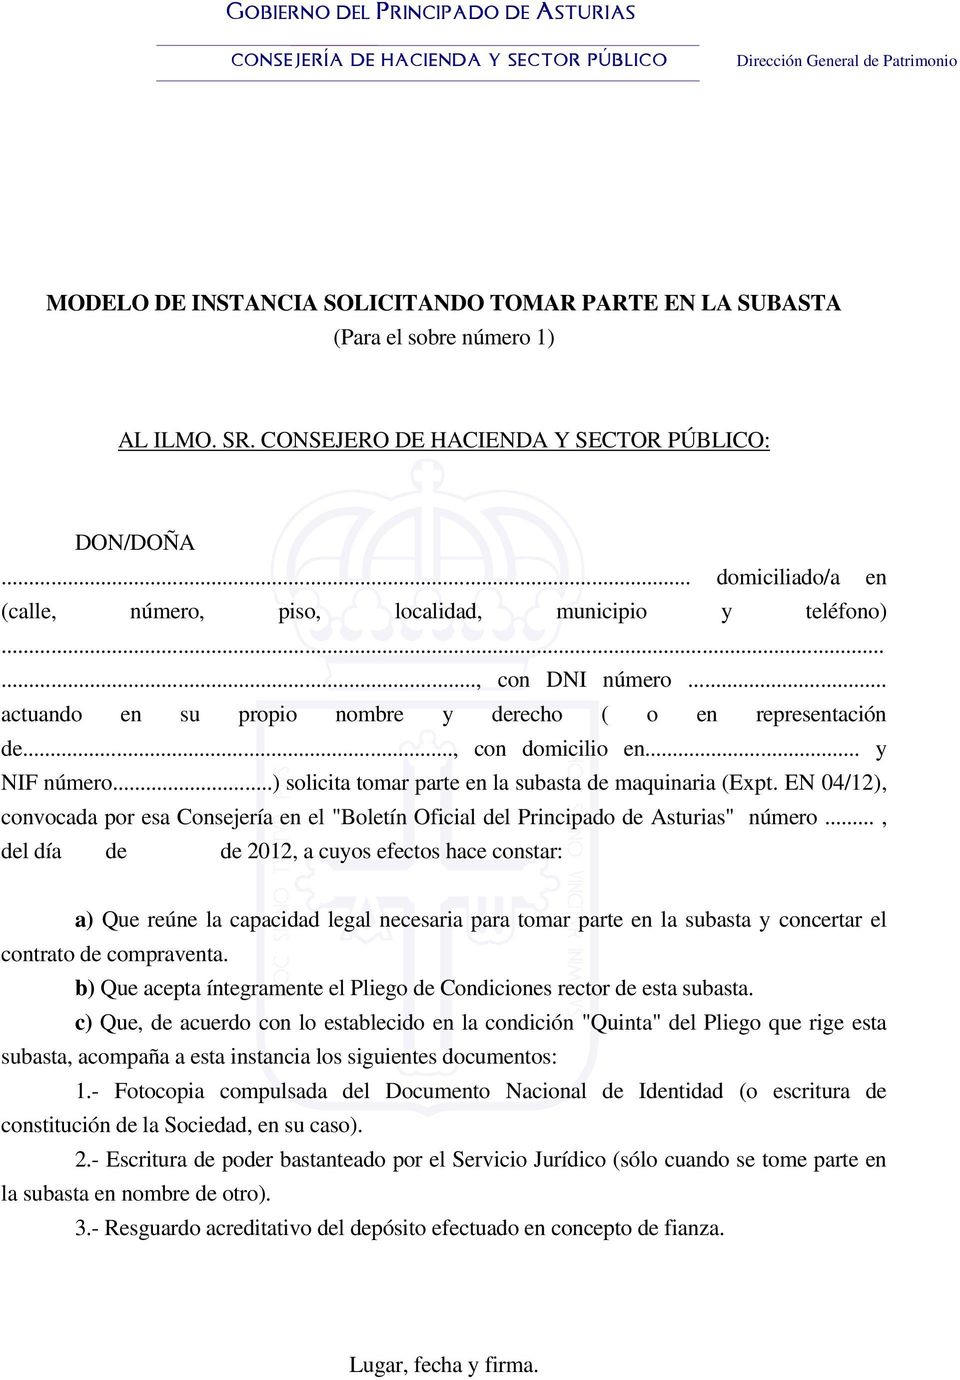 ..) solicita tomar parte en la subasta de maquinaria (Expt. EN 04/12), convocada por esa Consejería en el "Boletín Oficial del Principado de Asturias" número.